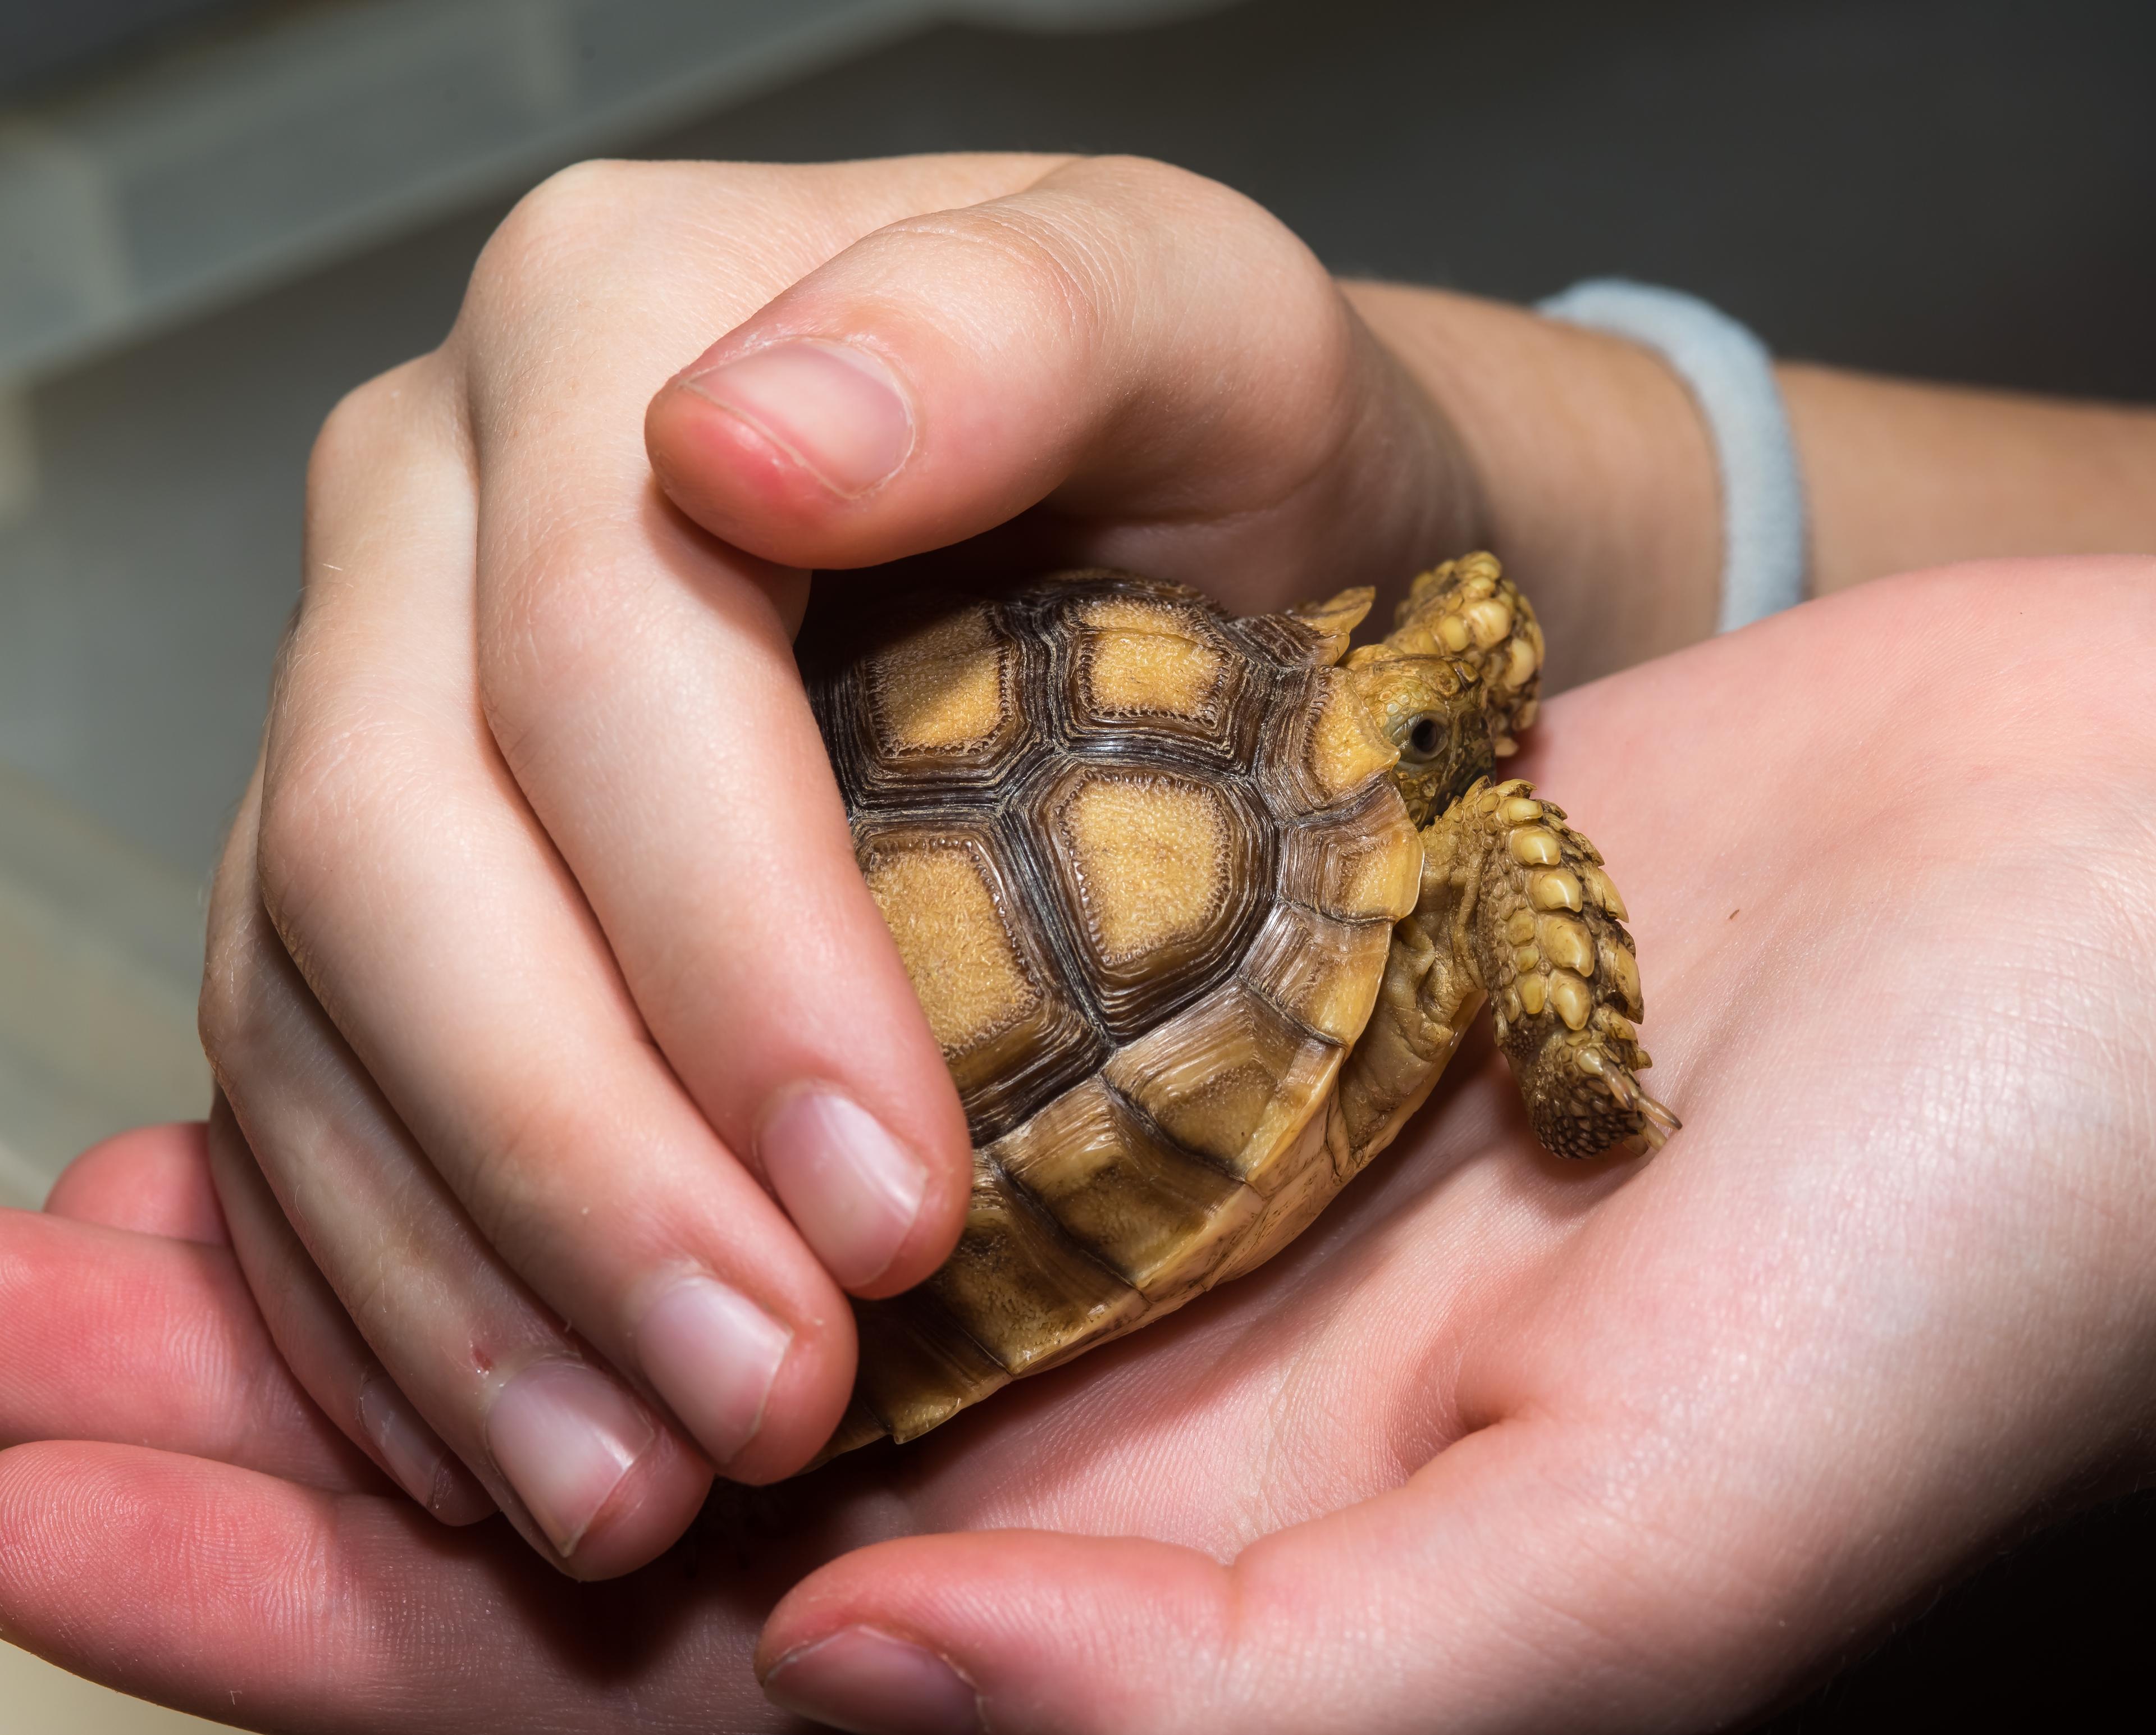 Hände halten schützend eine Landschildkröte